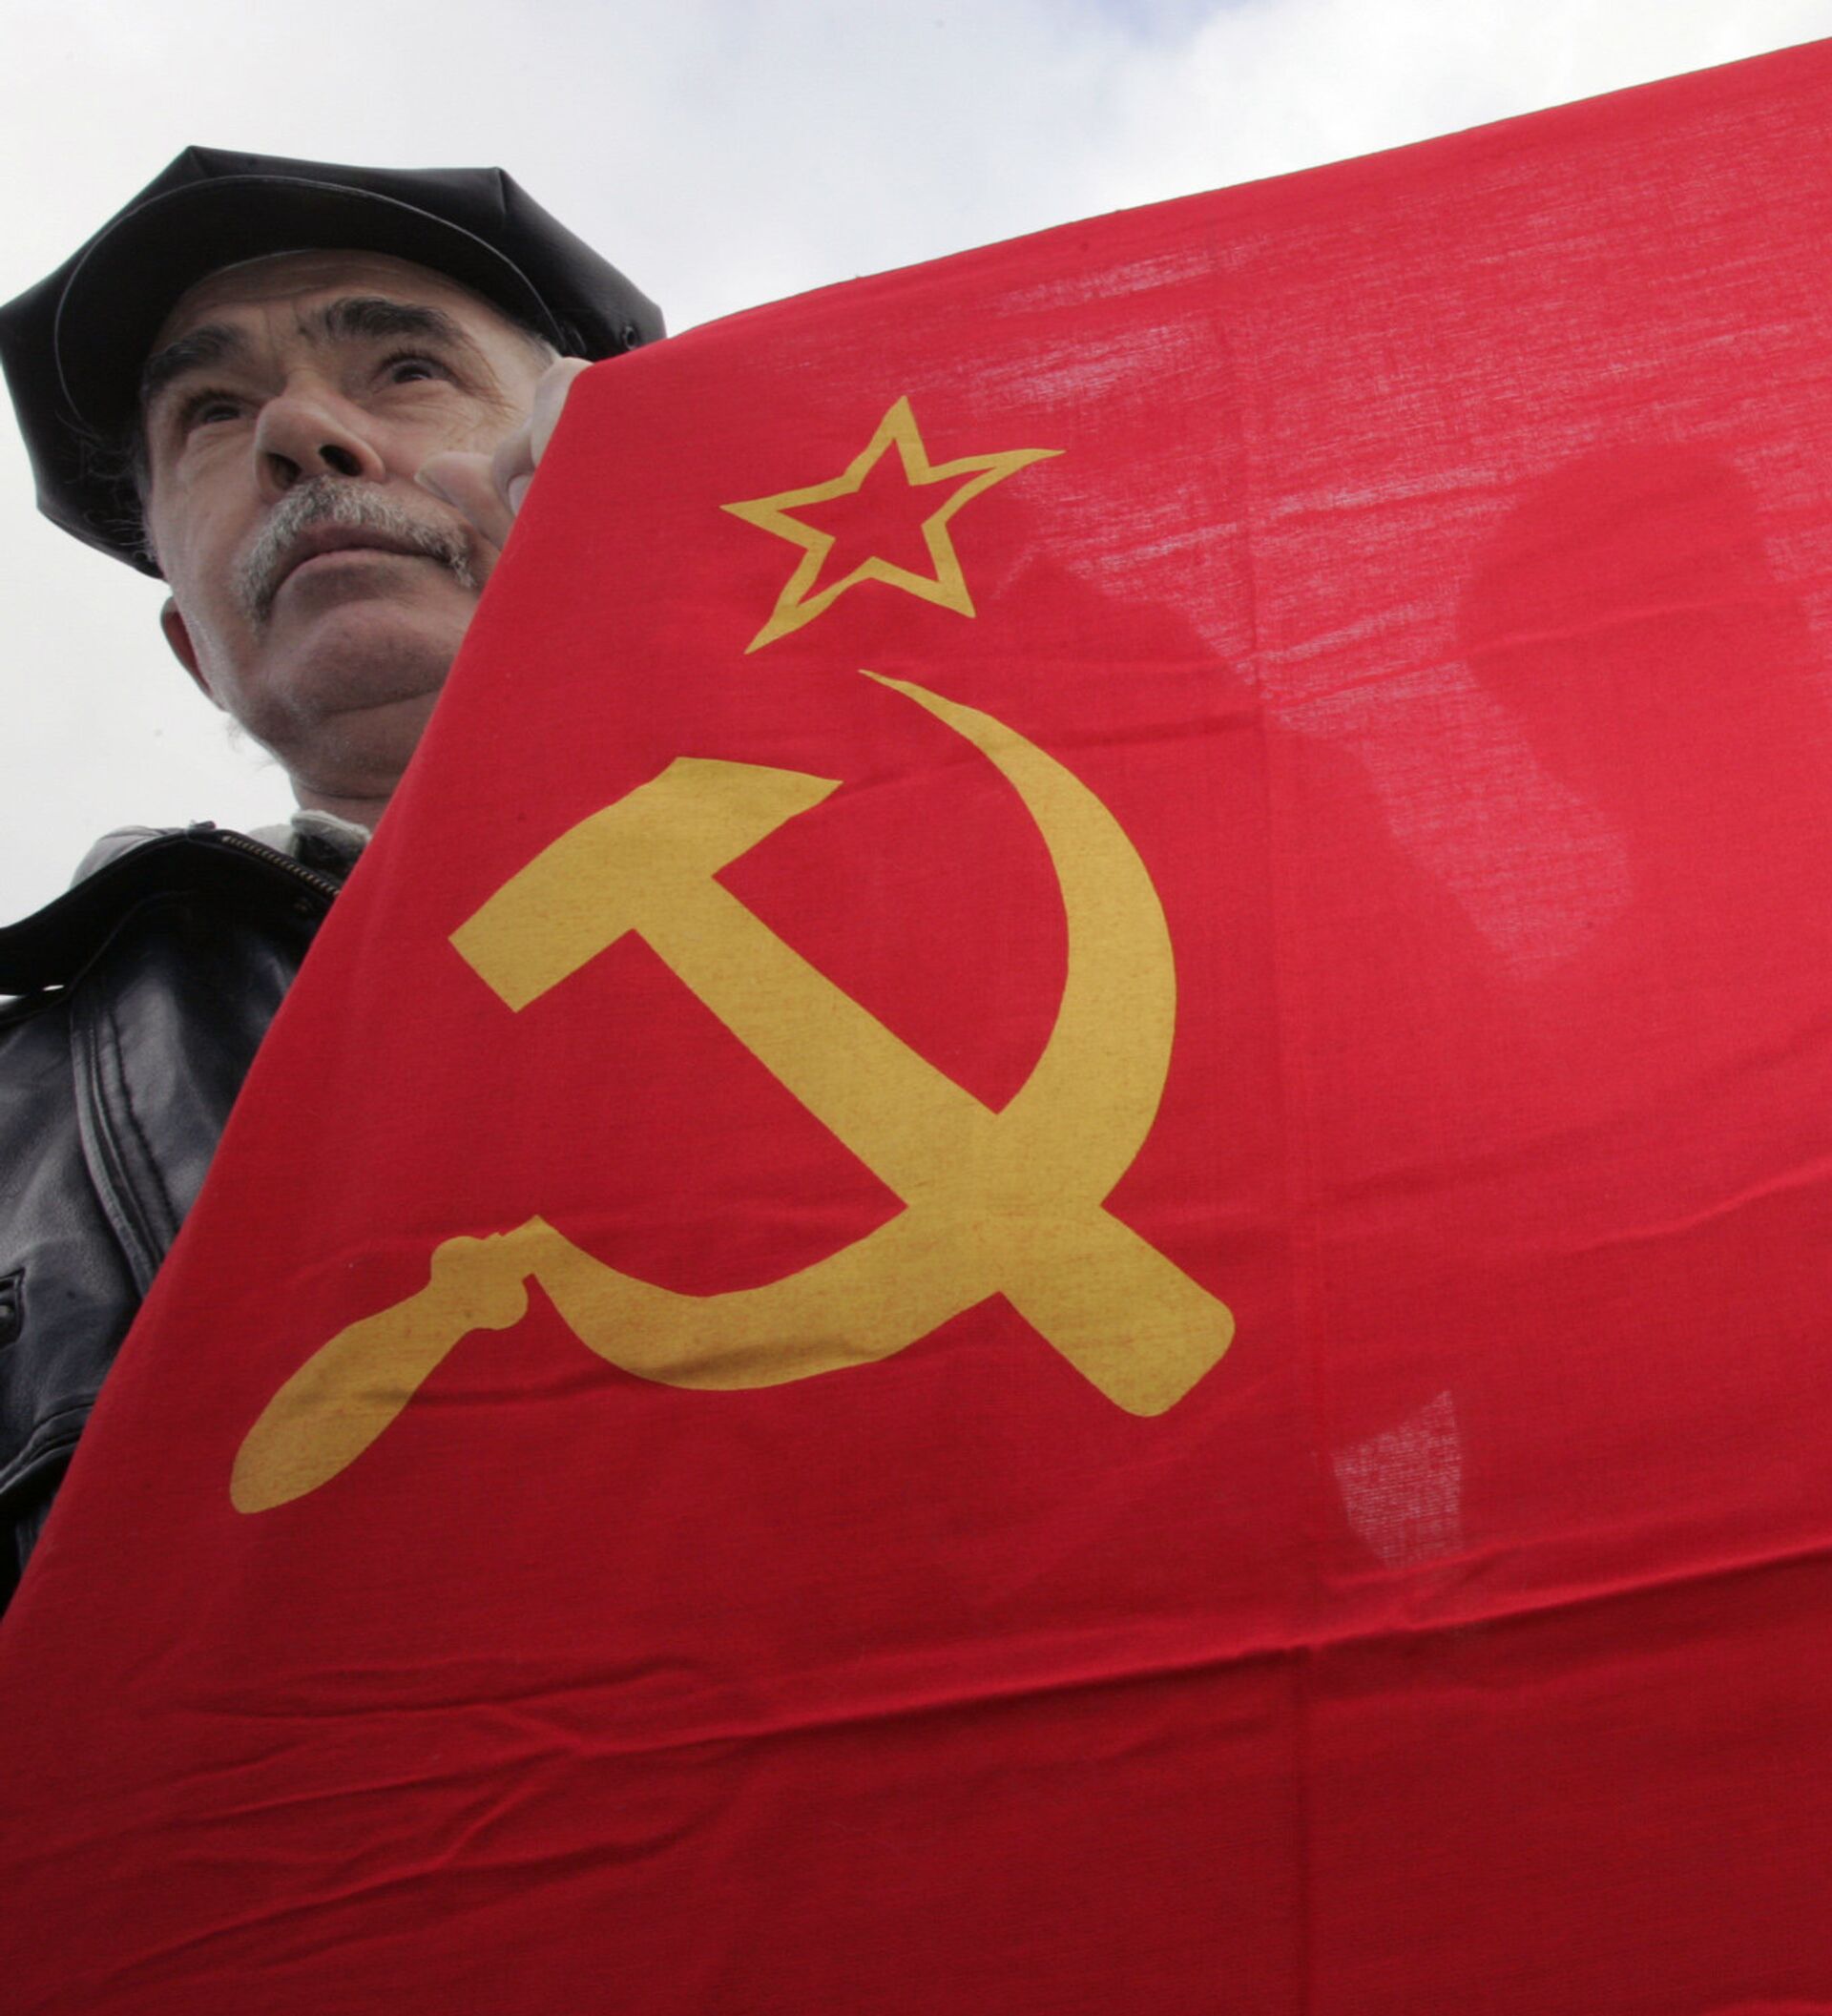 Cuộc sống thời Liên Xô: Cuộc sống của người Liên Xô đã trải qua nhiều biến đổi và thay đổi lớn trong suốt 80 năm tồn tại của Liên Xô. Xem hình ảnh liên quan đến cuộc sống thời Liên Xô, chúng ta có thể chứng kiến cuộc cách mạng công nghiệp và cuộc cách mạng văn hóa táo bạo trong lịch sử nhân loại.